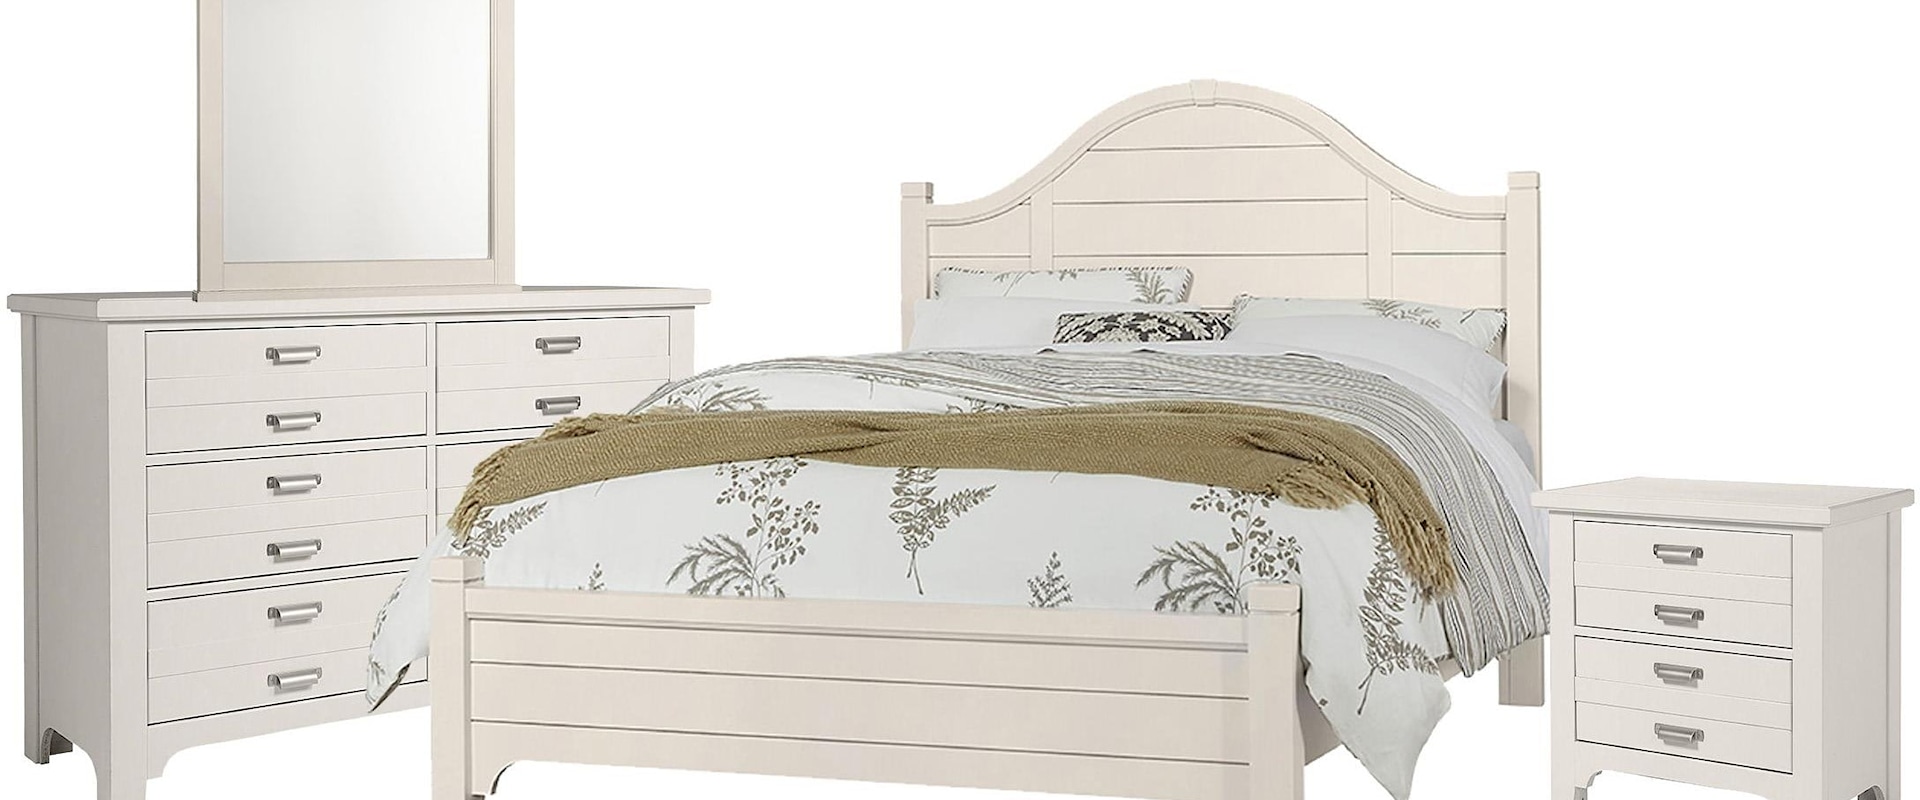 Queen Arch Bed, 6 Drawer Dresser, Landscape Mirror, 2 Drawer Nightstand